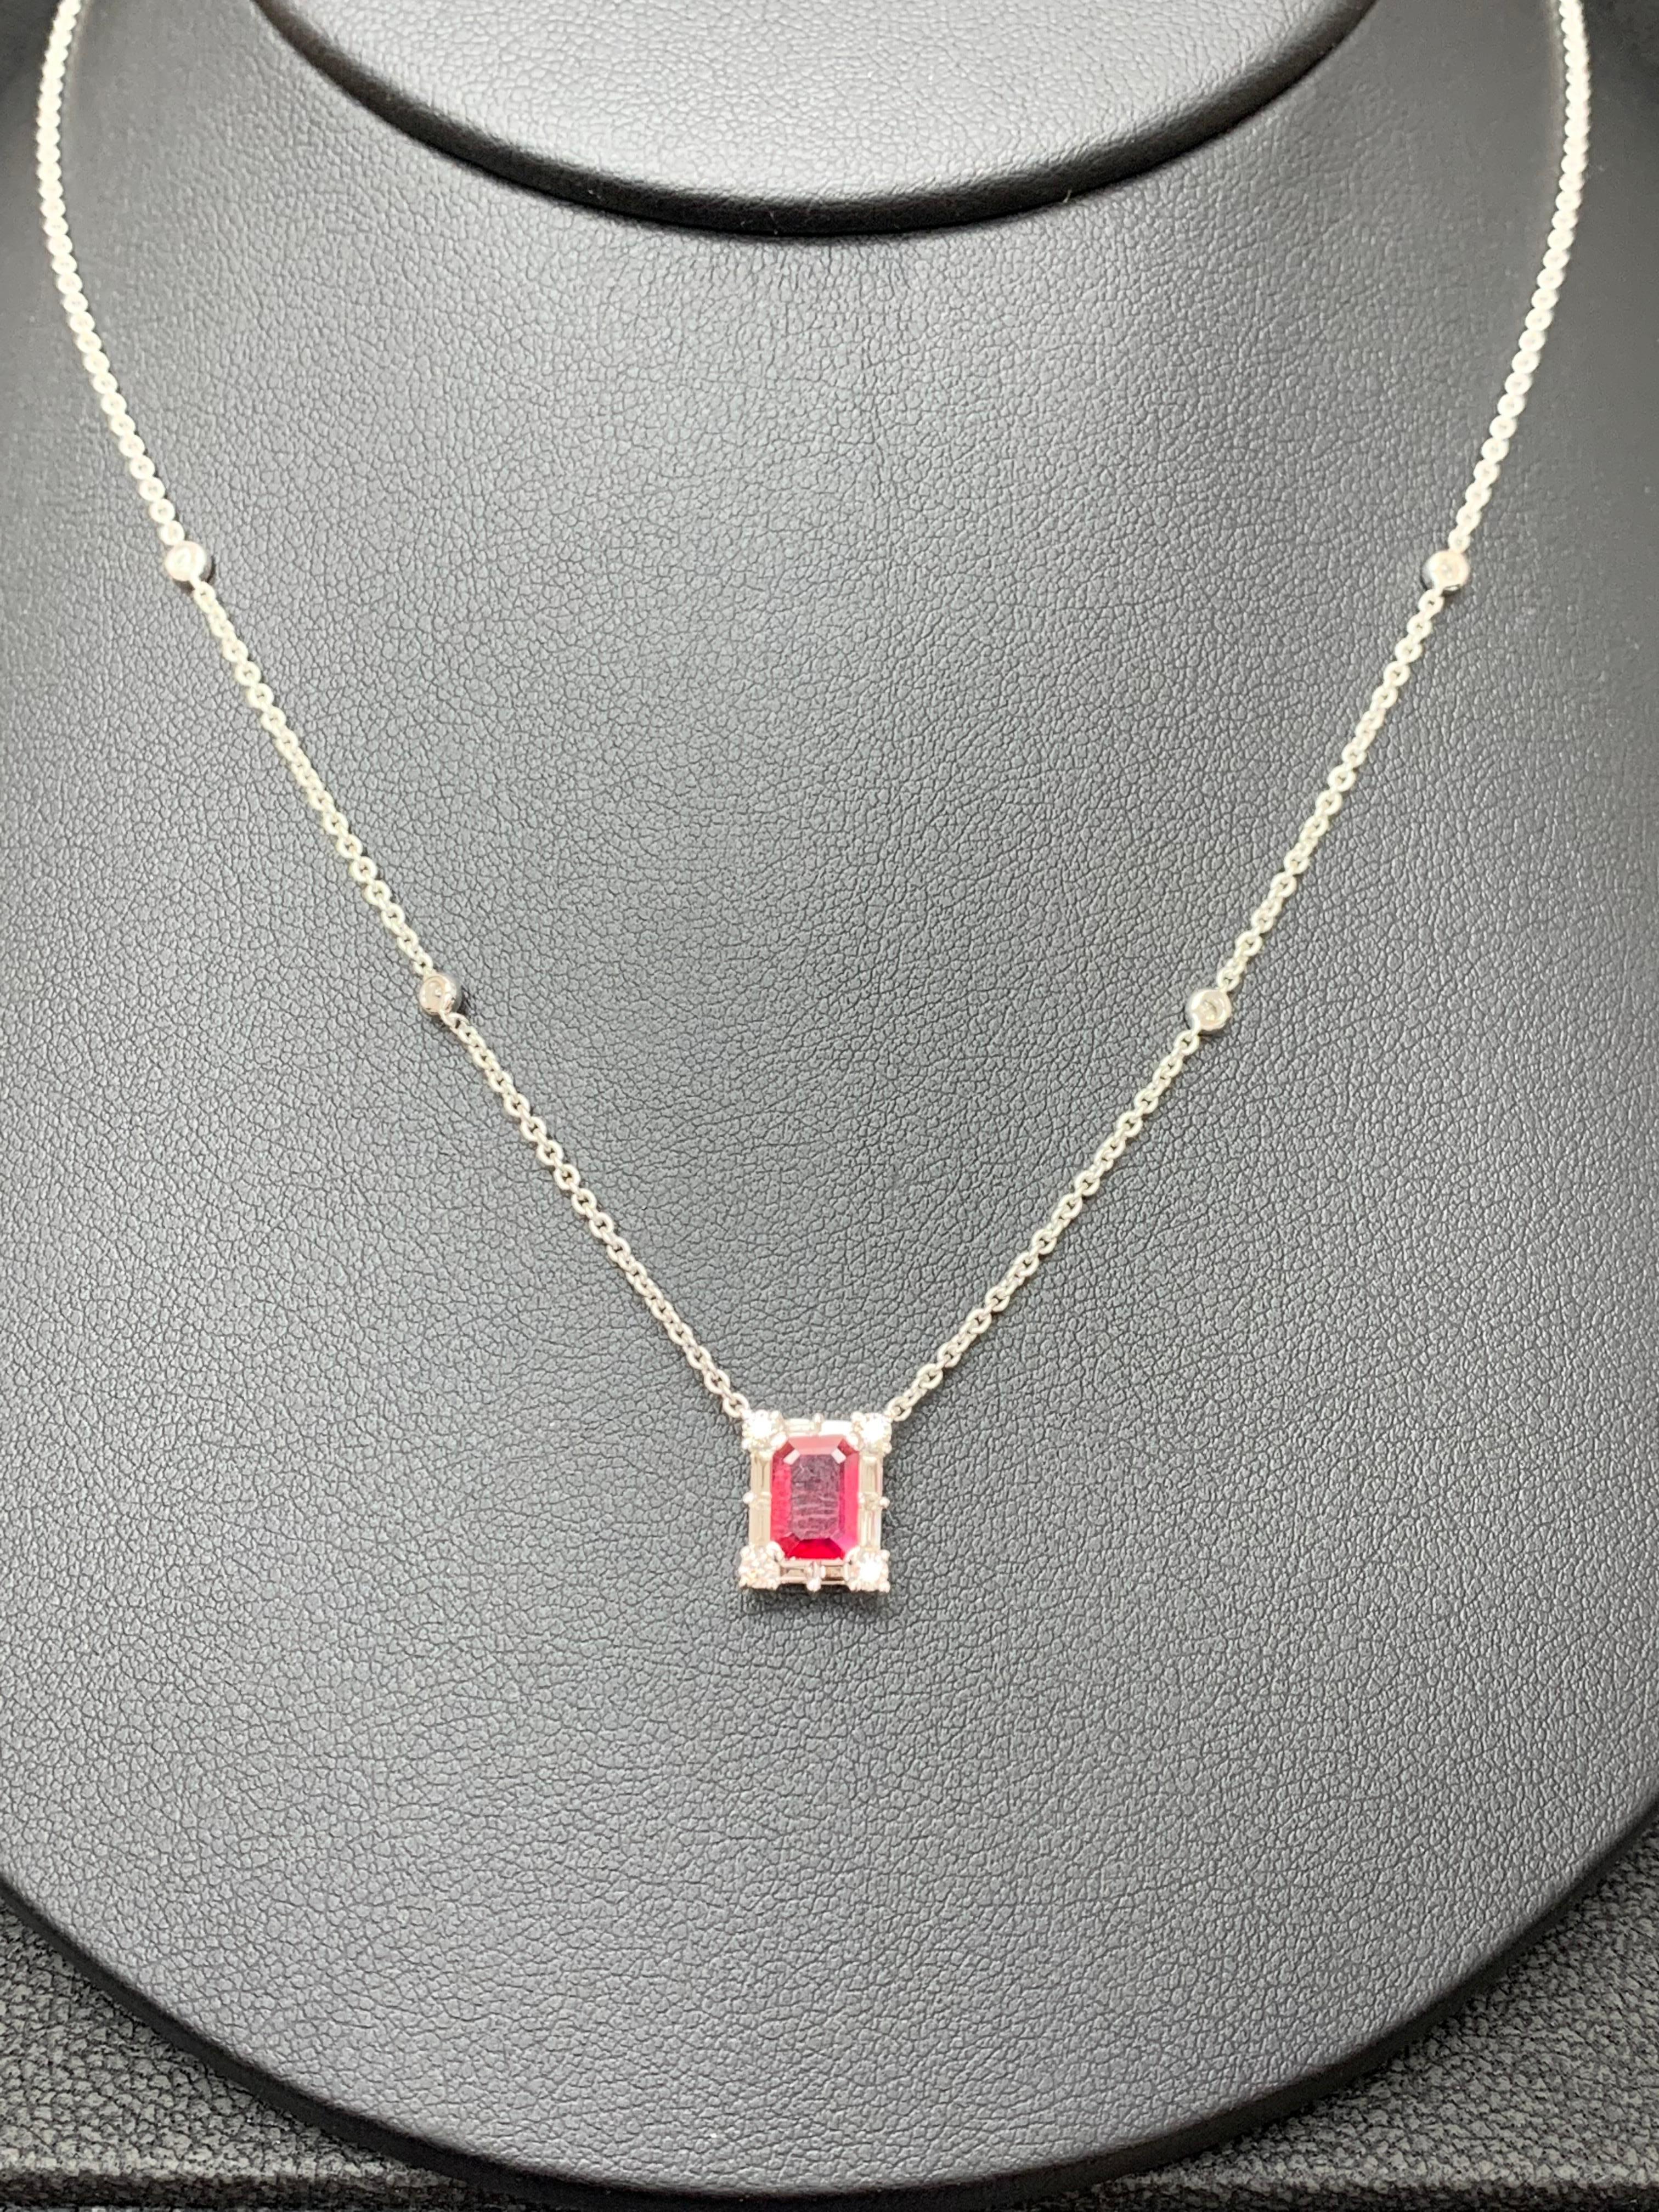 Un collier pendentif à la mode mettant en valeur un rubis de 0,77 carat de couleur rouge vif, taillé en émeraude. La pierre centrale est entourée d'une rangée de diamants taille brillant, 8 diamants ronds et 8 diamants baguette pesant au total 0,58